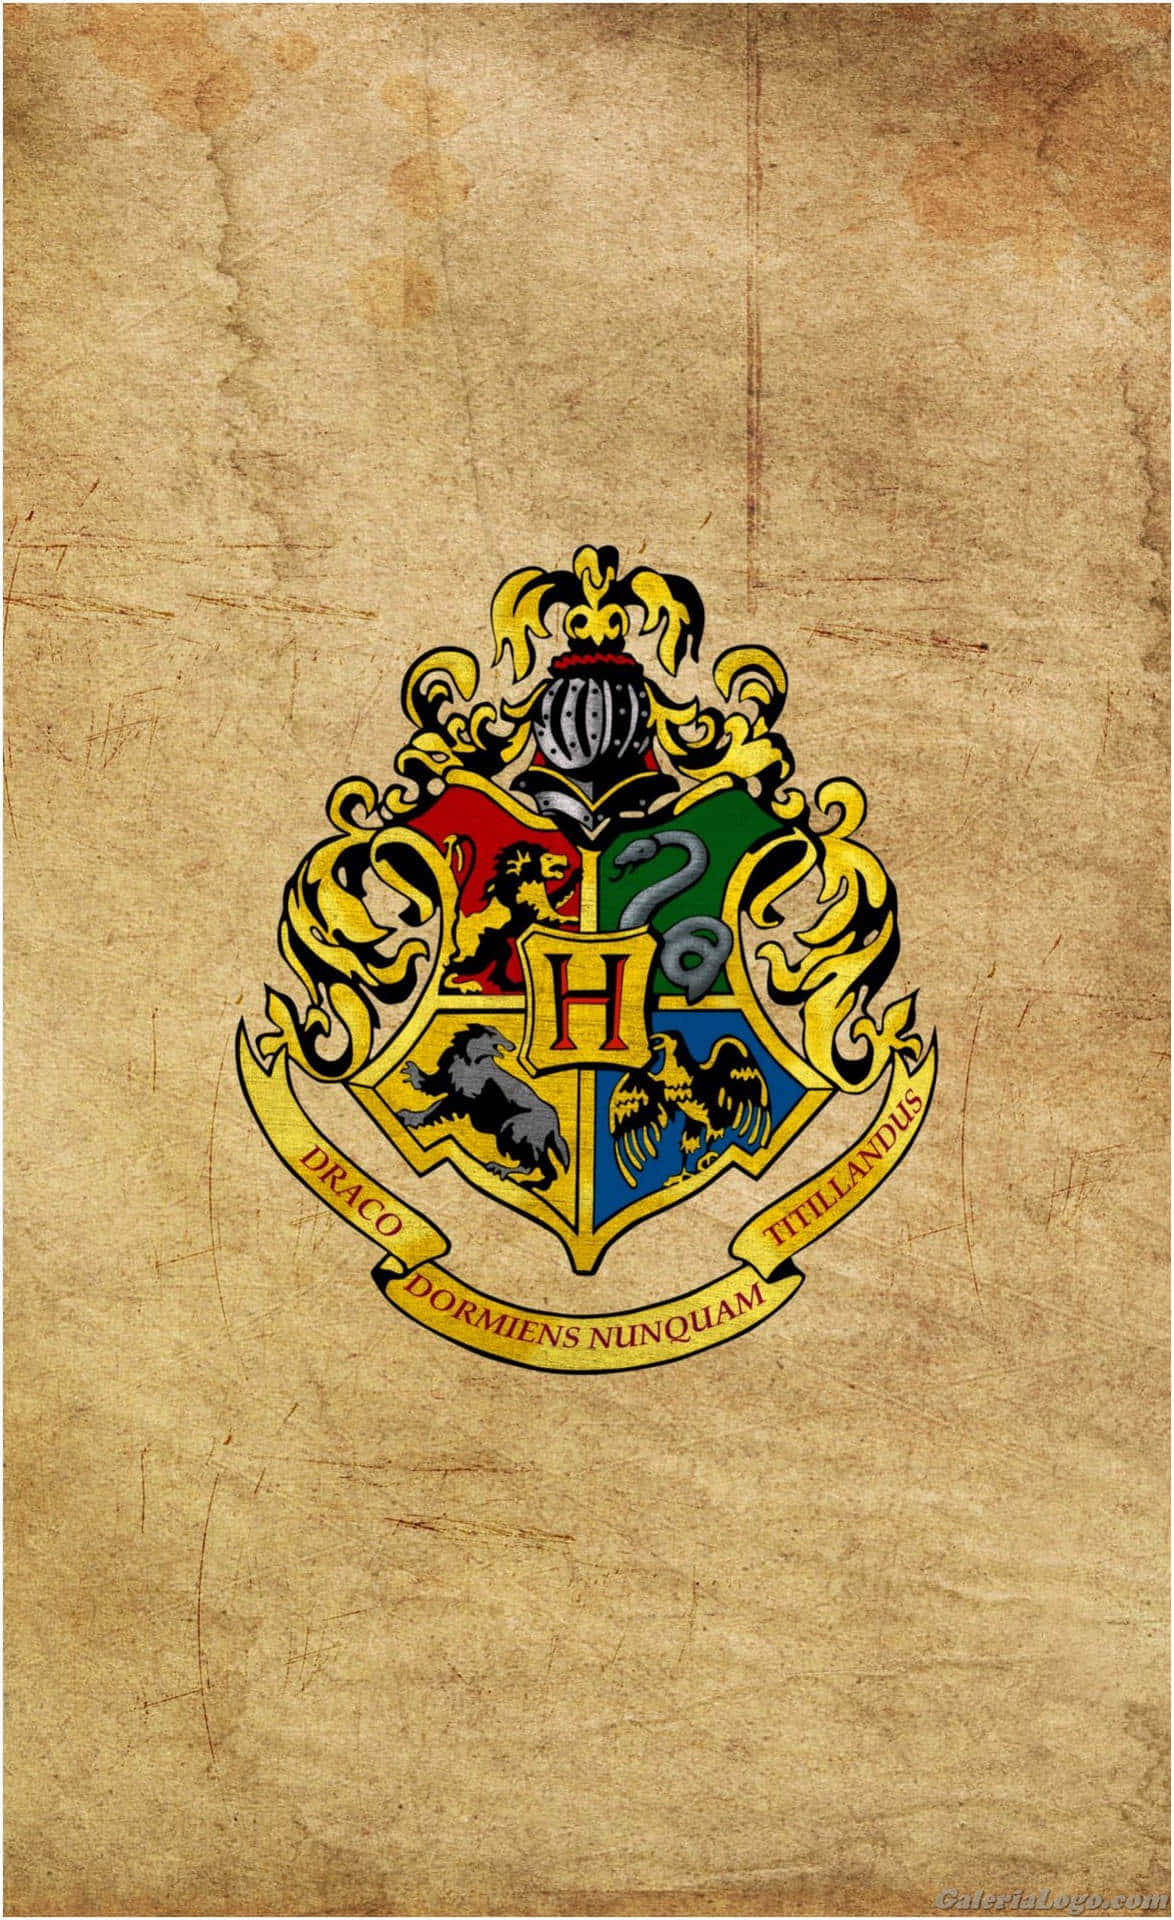 Fondode Pantalla Del Escudo De Hogwarts De Harry Potter.